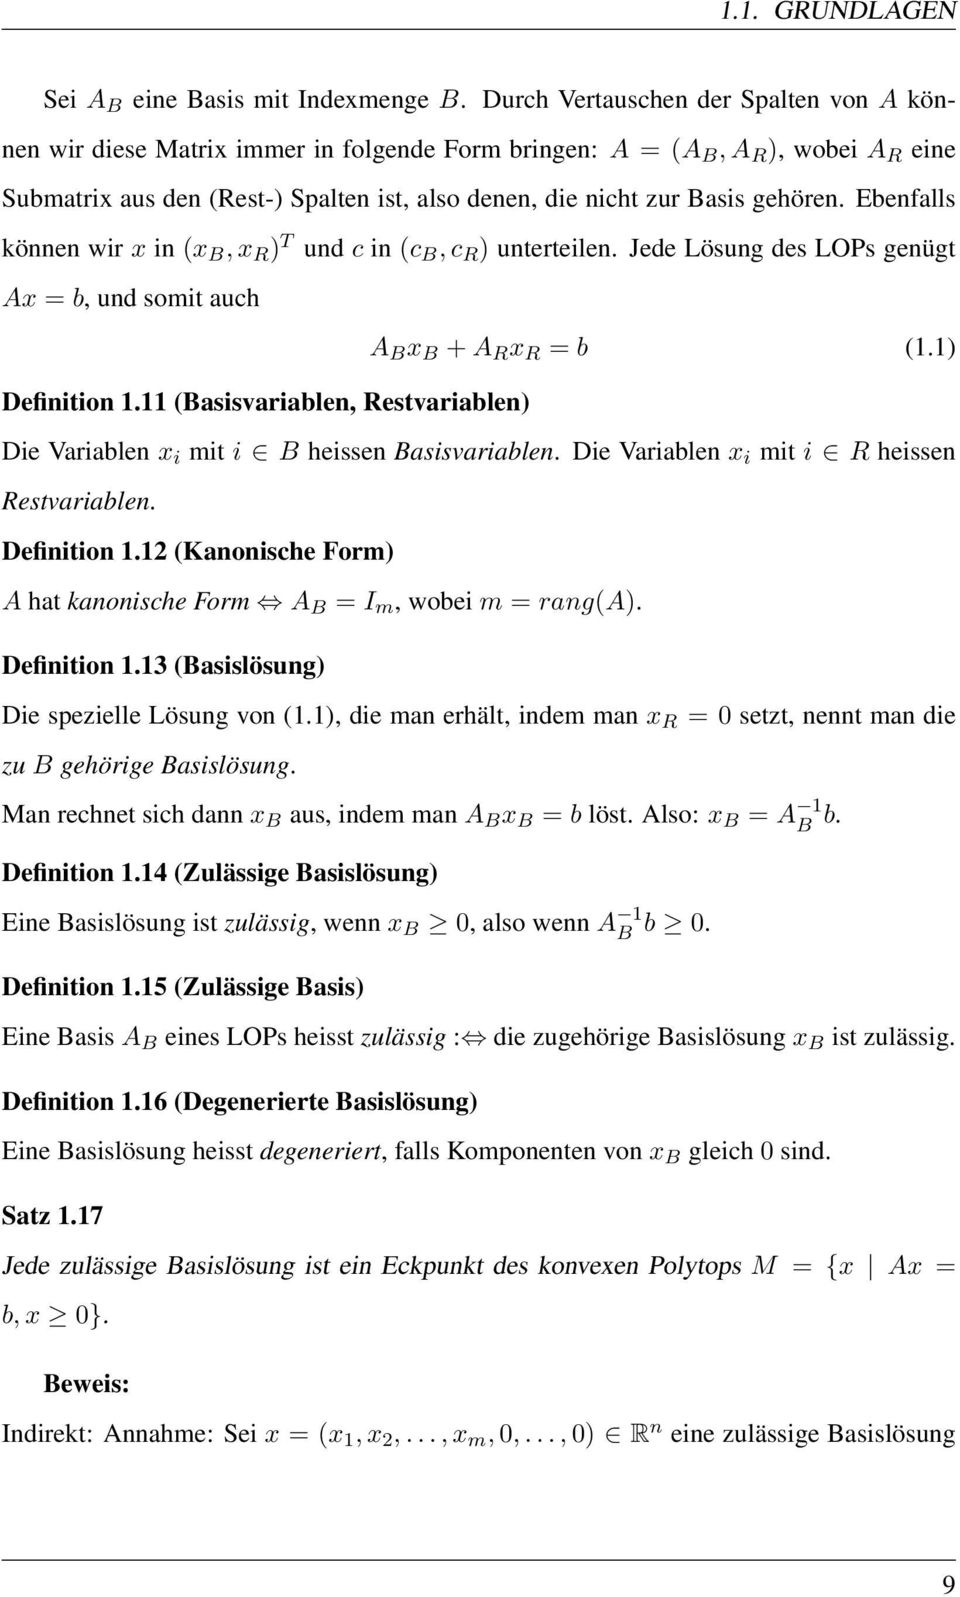 (Basisvariablen, Restvariablen) A B x B + A R x R = b (11) Die Variablen x i mit i B heissen Basisvariablen Die Variablen x i mit i R heissen Restvariablen Definition 112 (Kanonische Form) A hat